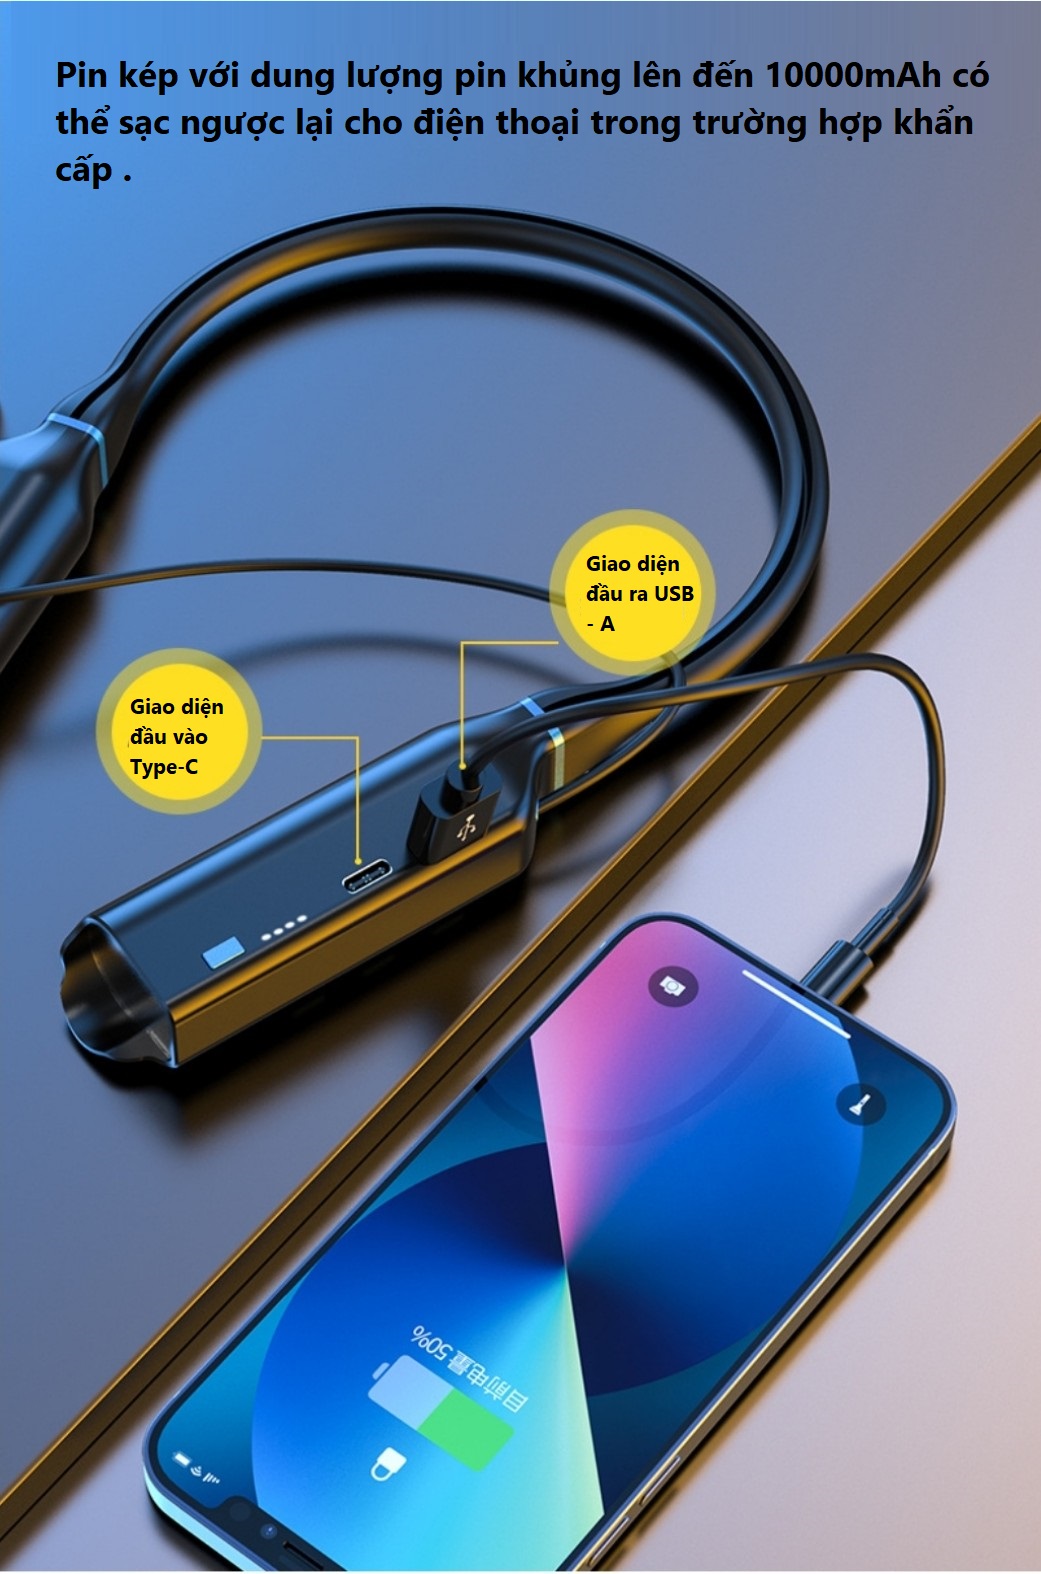 Tai nghe Bluetooth 5.2 thể thao quàng cổ pin 10000mAh  sử dụng liên tục lên đến 1000 giờ , 4 loa 8 lõi âm thanh hifi - stereo có thể điều chỉnh bass/ treble  , có khe lắp thẻ nhớ , hiển thị led báo % pin .